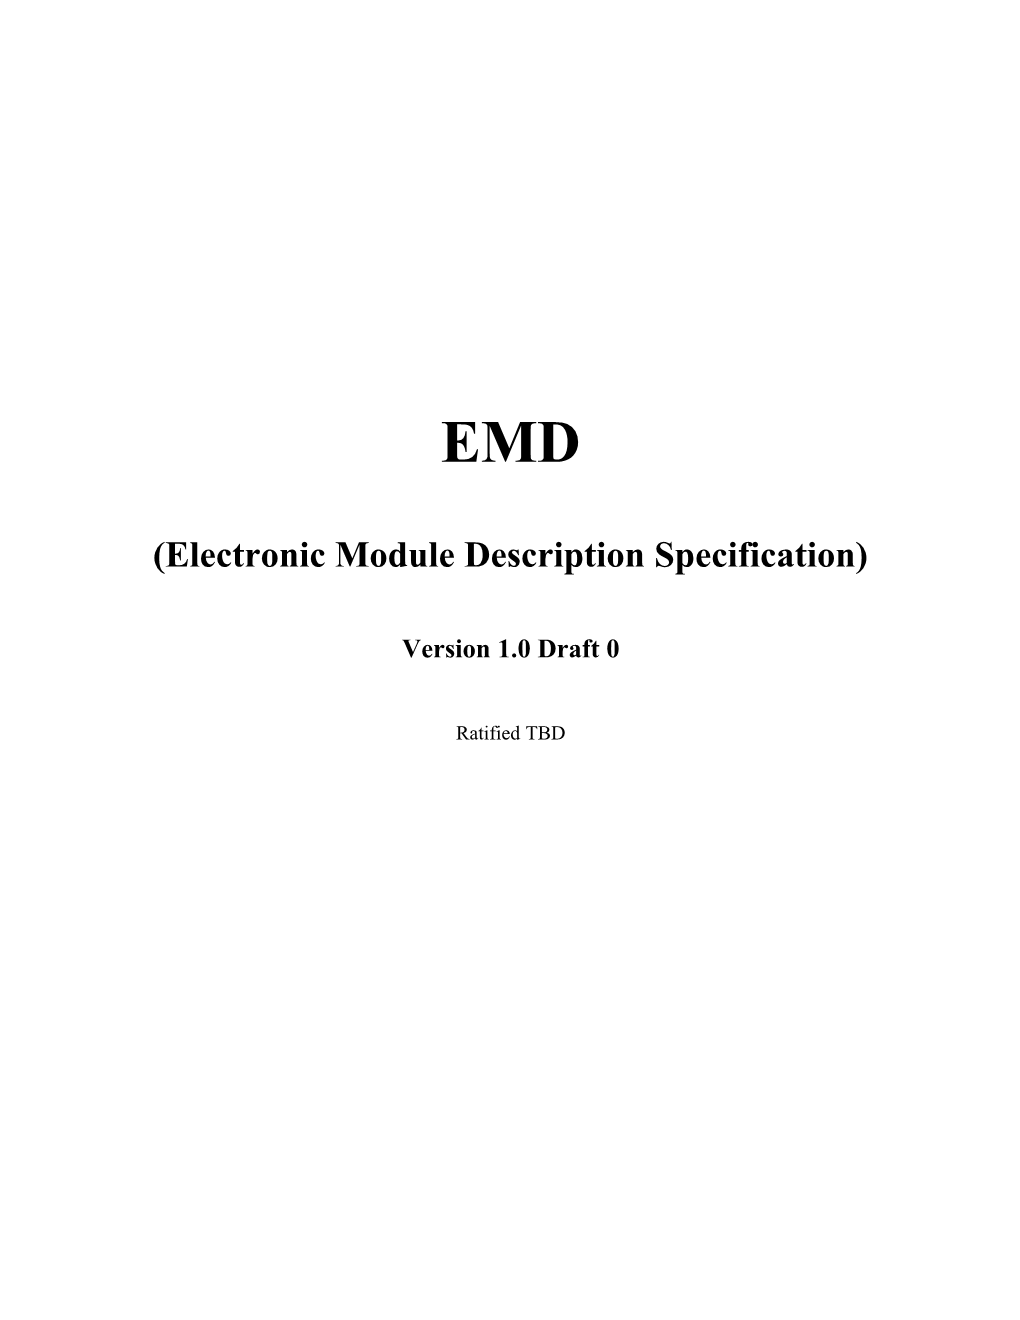 Electronic Module Description Specification